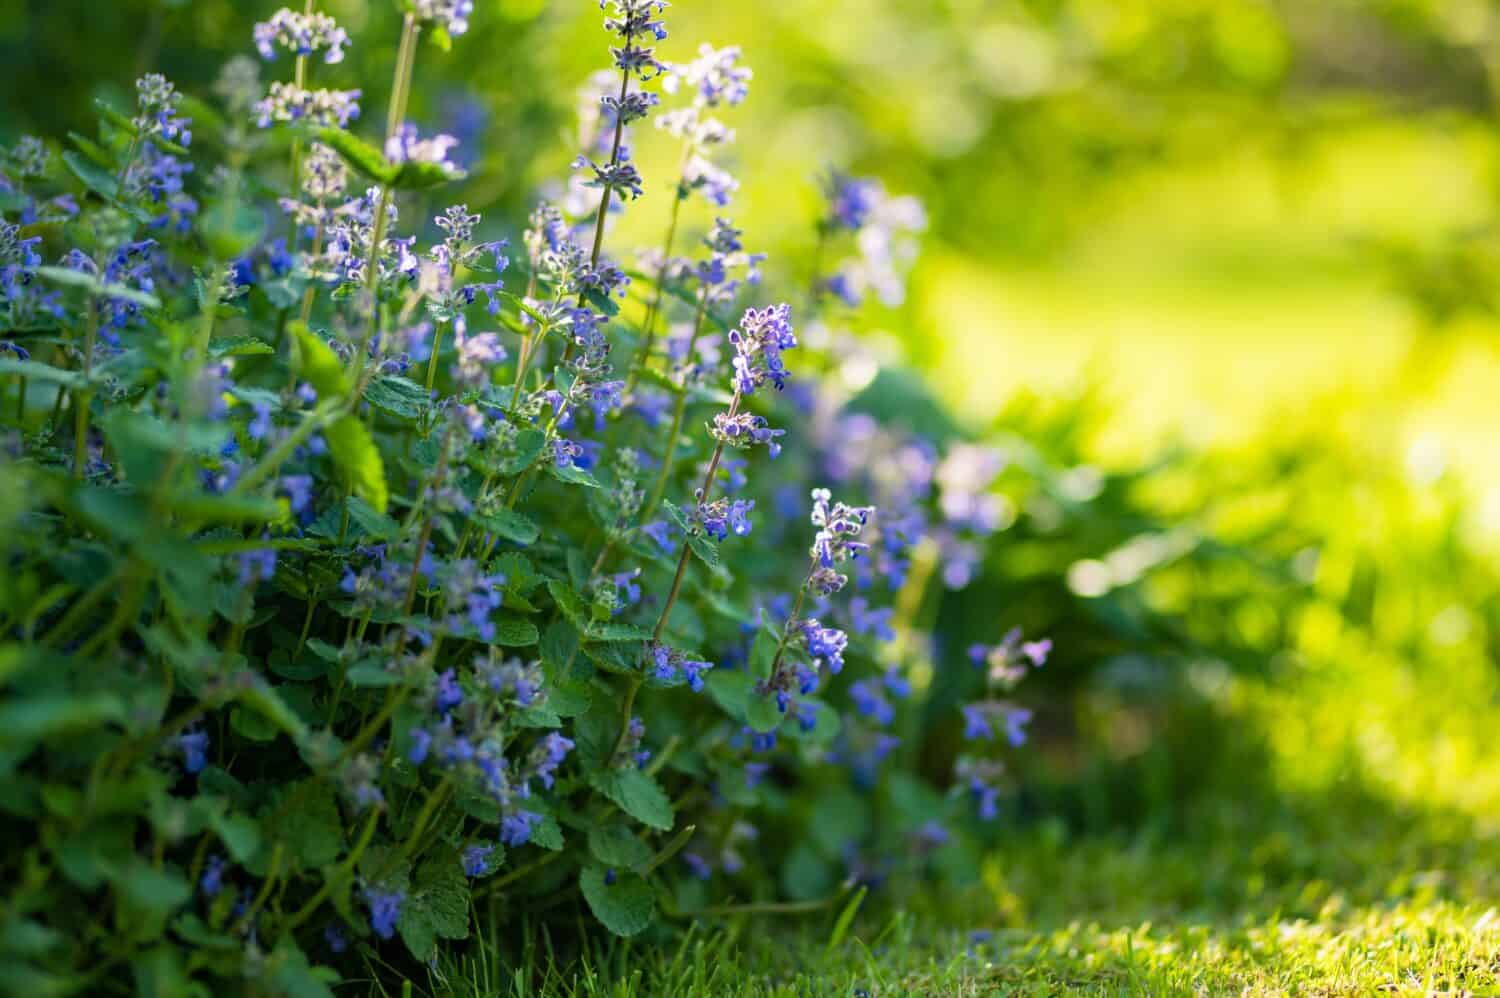 Fiori di erba gatta (Nepeta cataria) che fioriscono in un giardino nella soleggiata giornata estiva.  Bellezza nella natura.